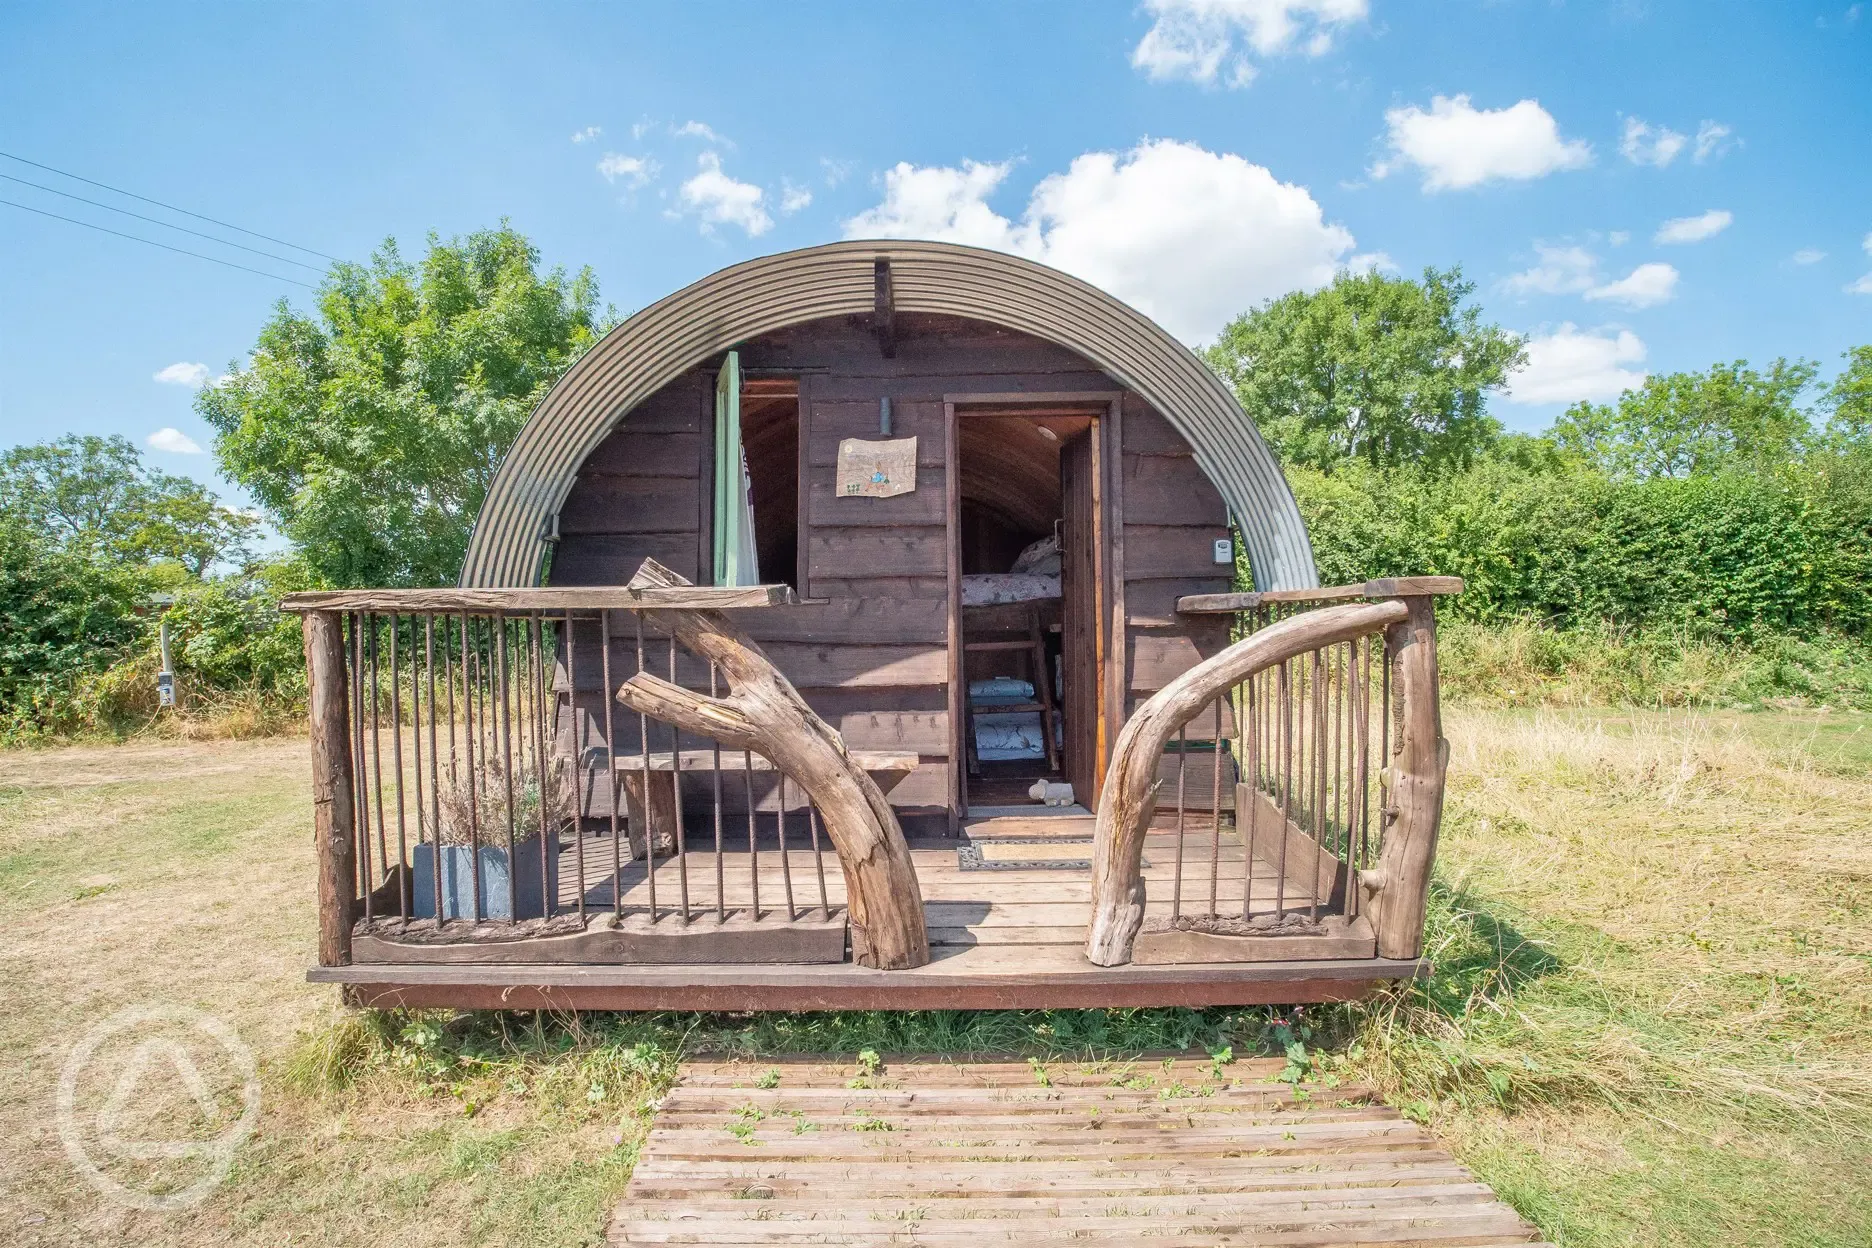 Peter Rabbit shepherd's hut pod exterior